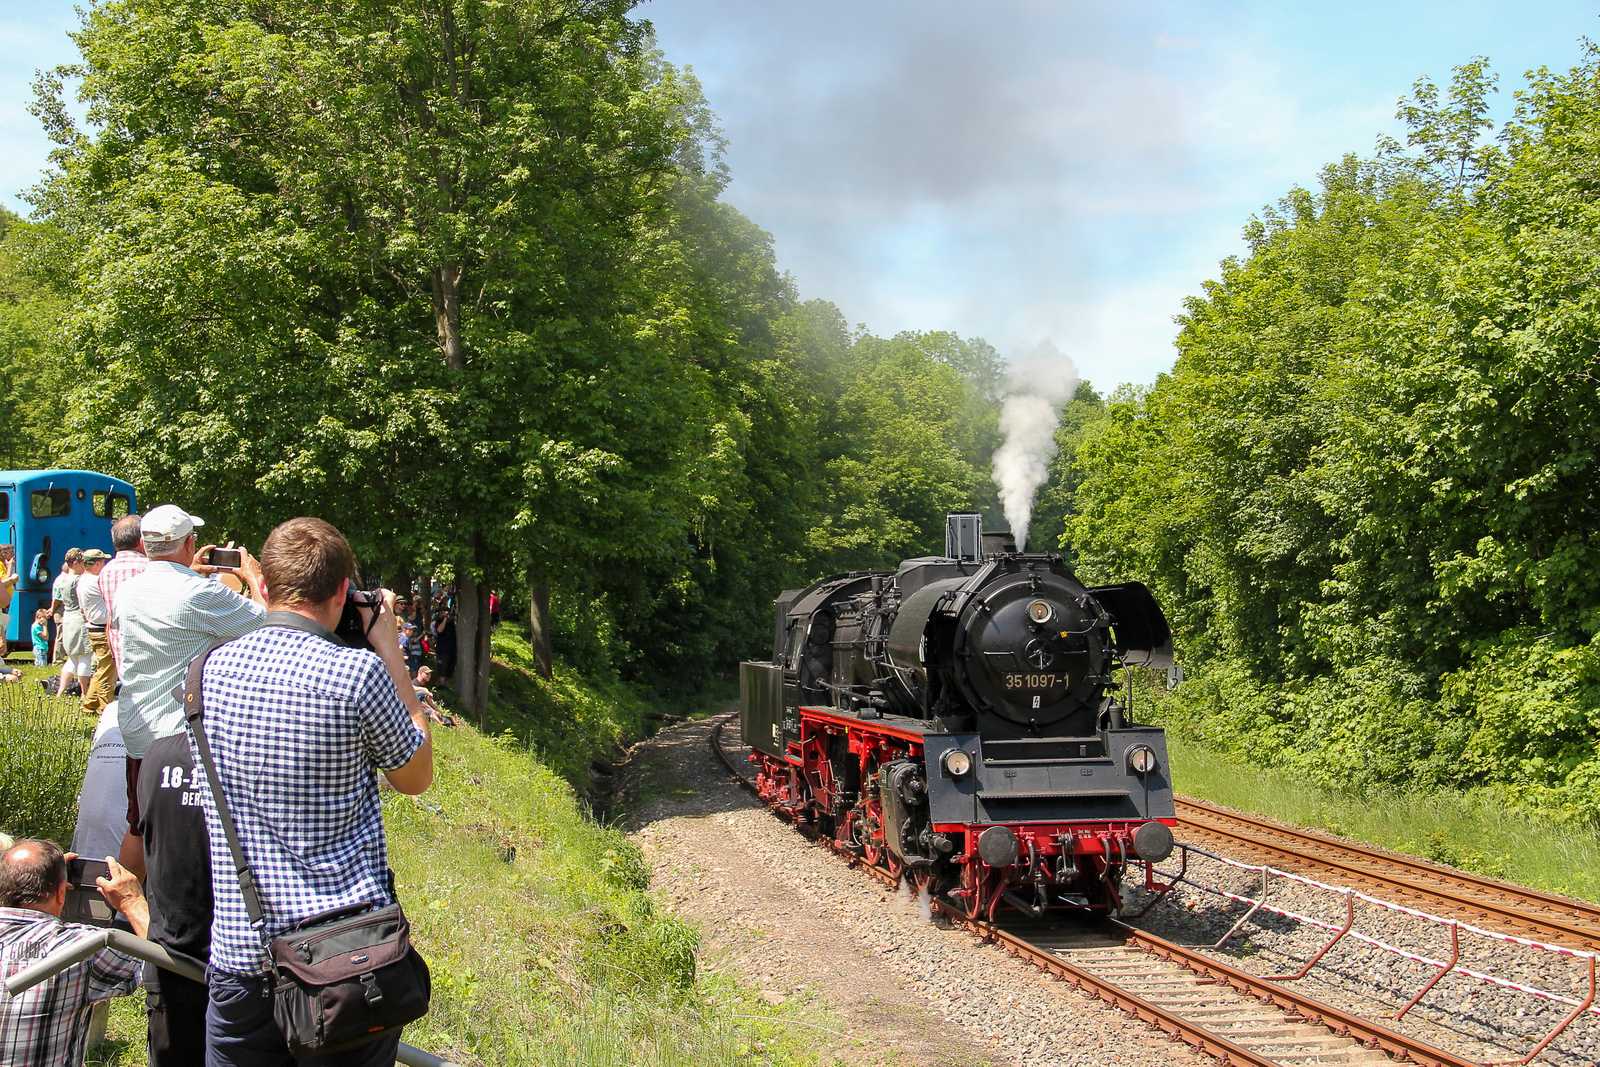 Am 2. Juni 2019 nahm die Glauchauer 35 1097-1 als einzige betriebsfähige Dampflokomotive an der diesjährigen Fahrzeugparade in Schwarzenberg teil.